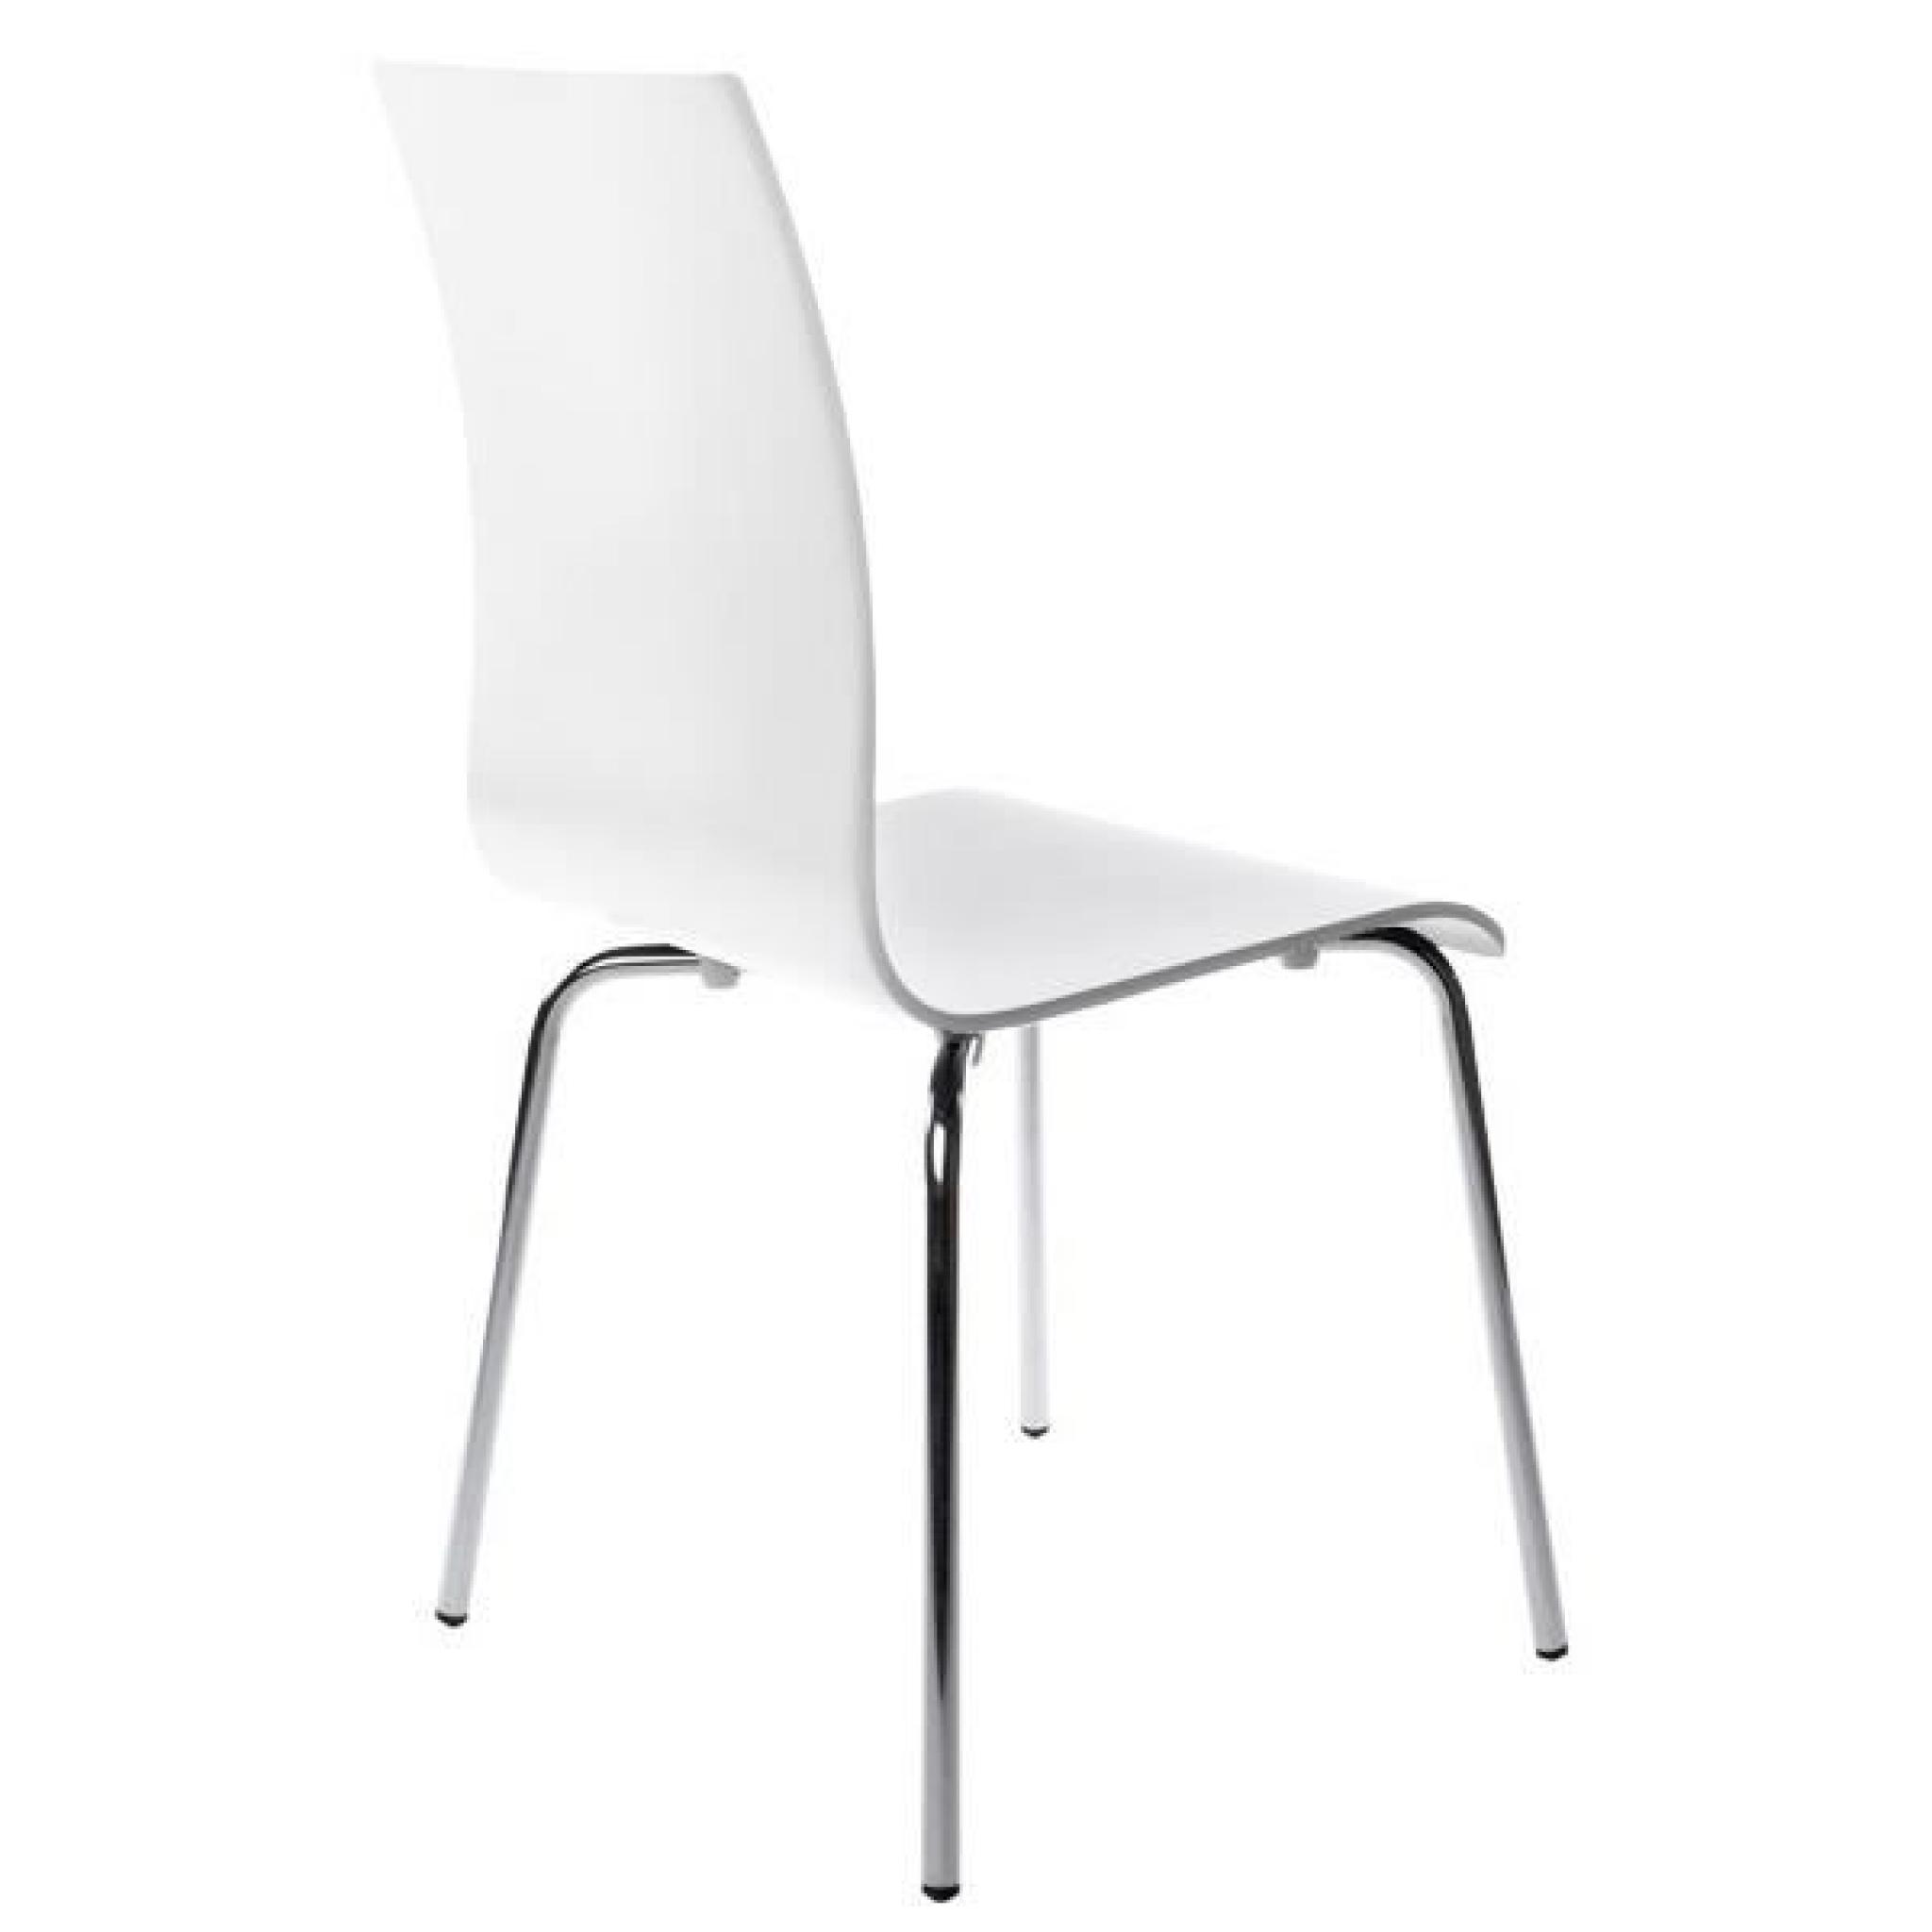 Chaise design en bois ou dérivés de couleur blan